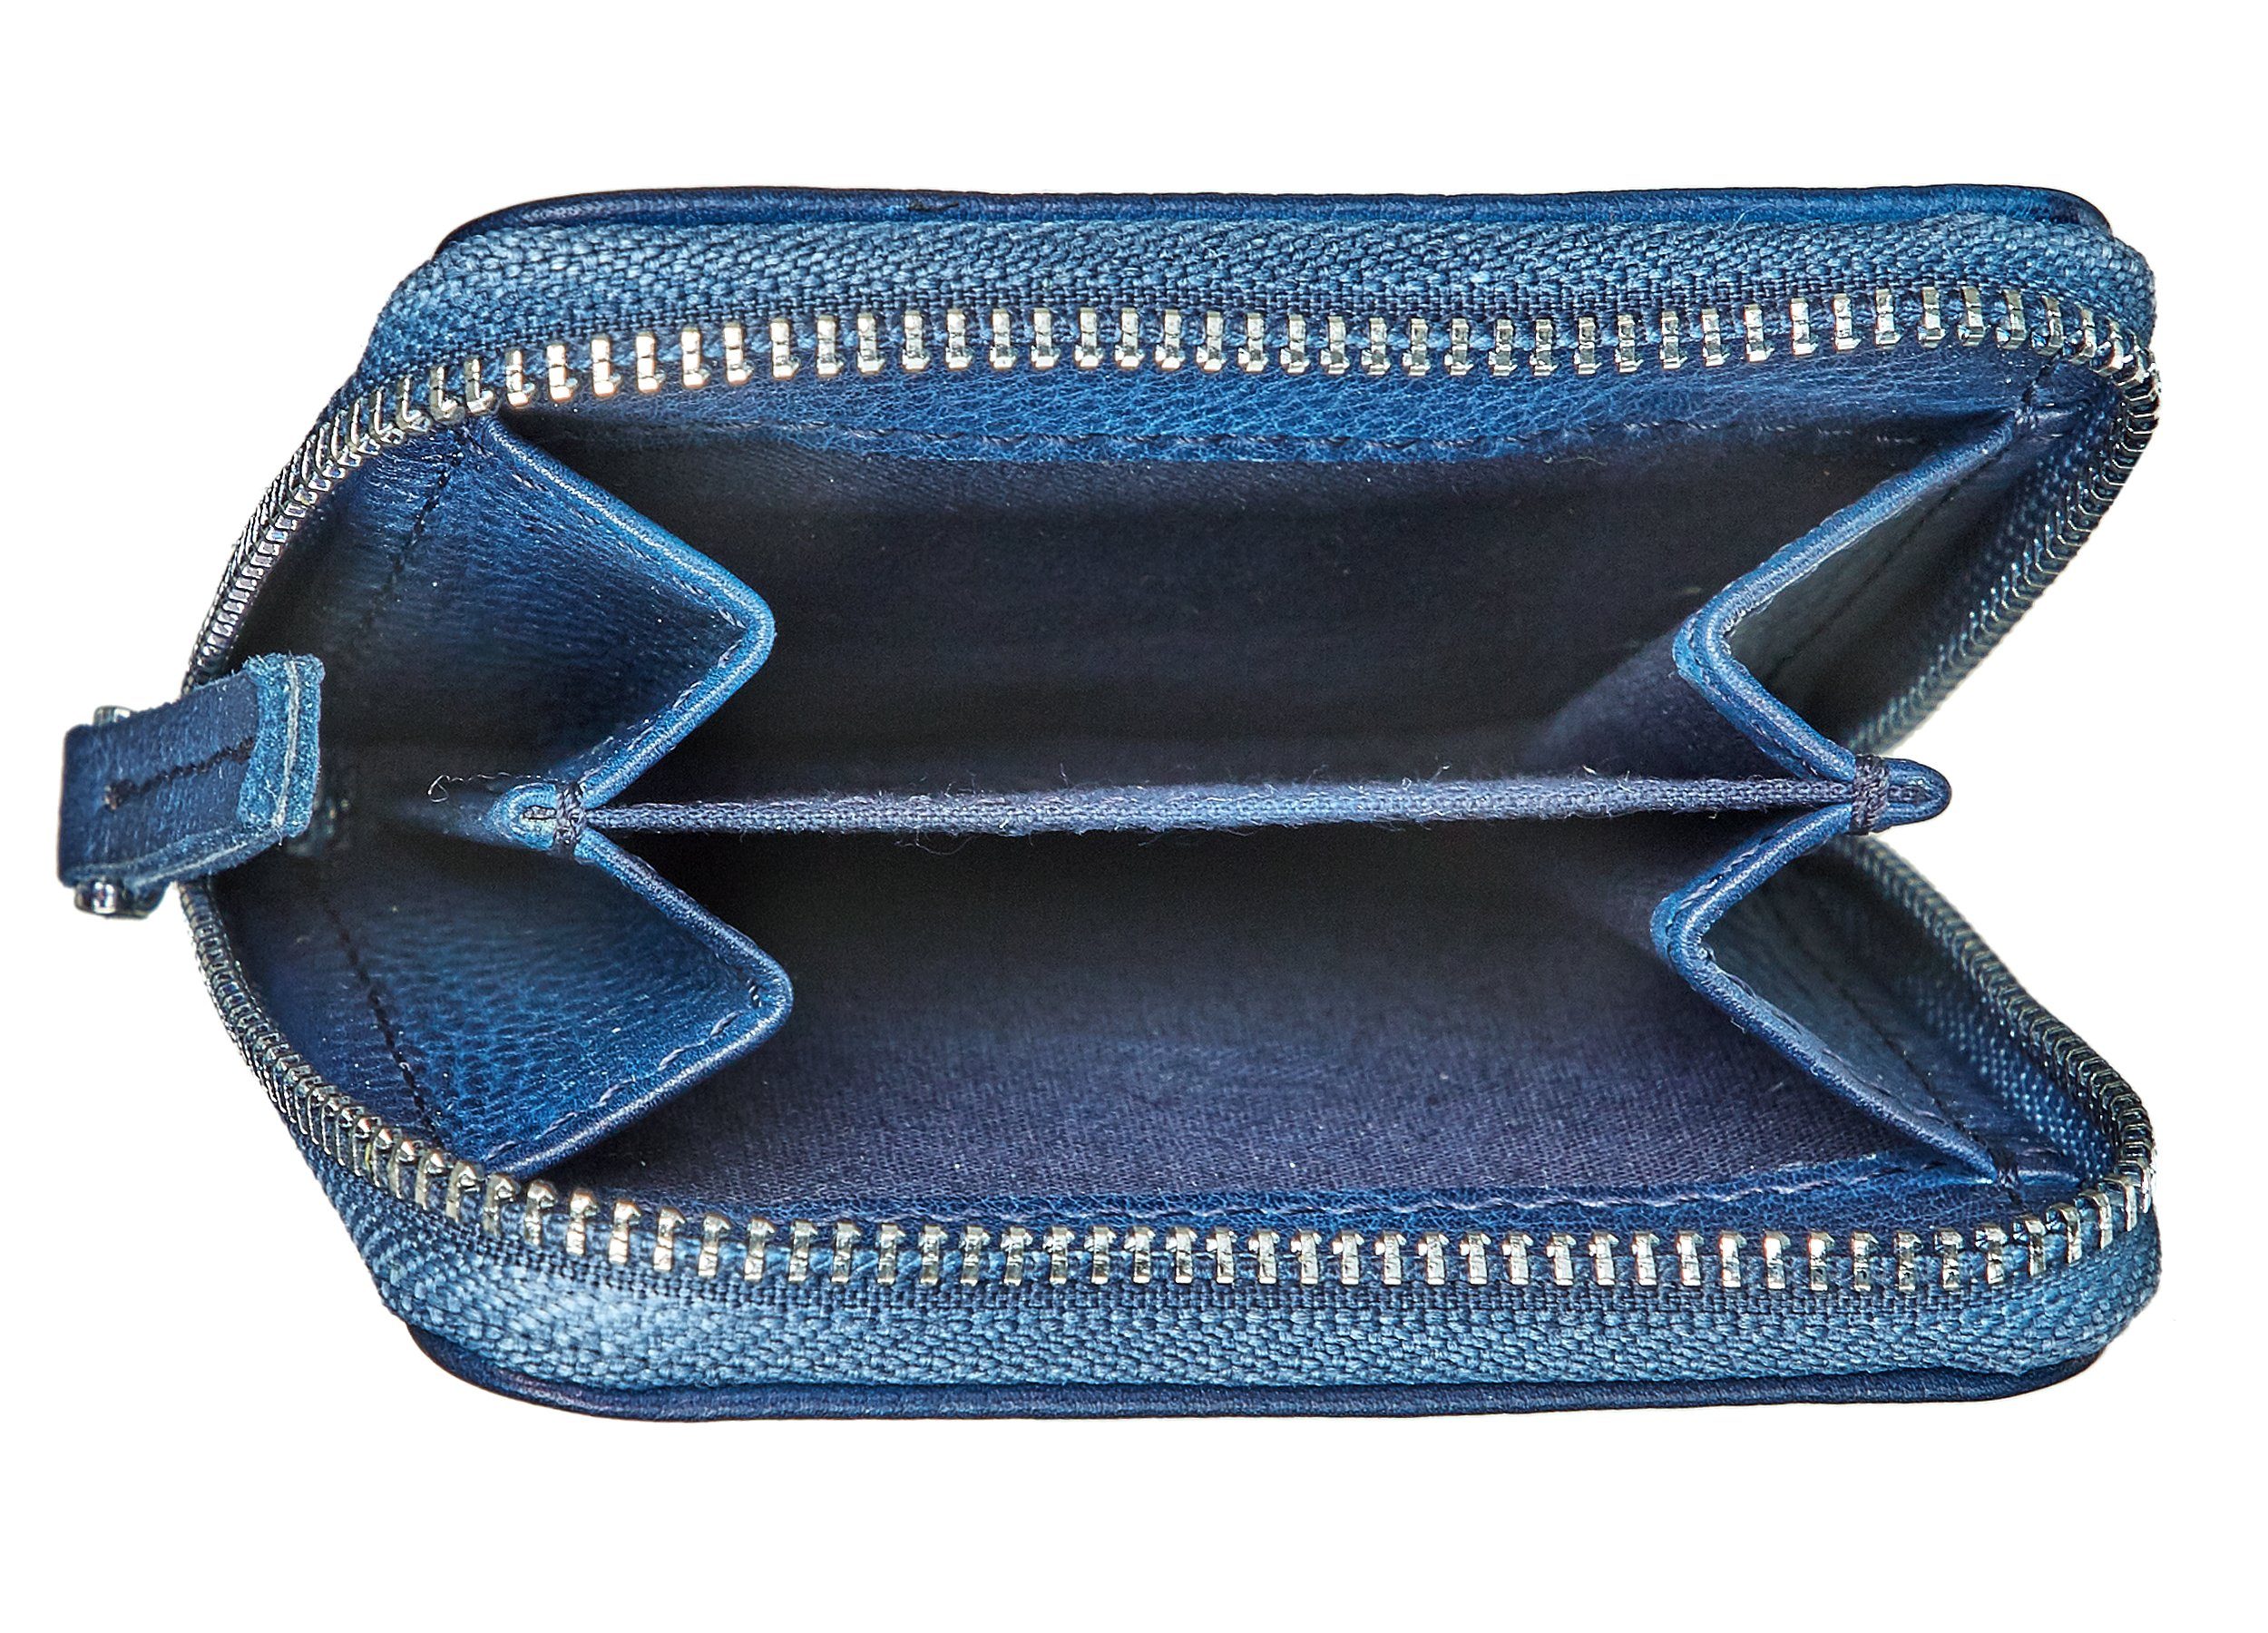 Bull Geldbörse mini Hunt blue zip & wallet Mini